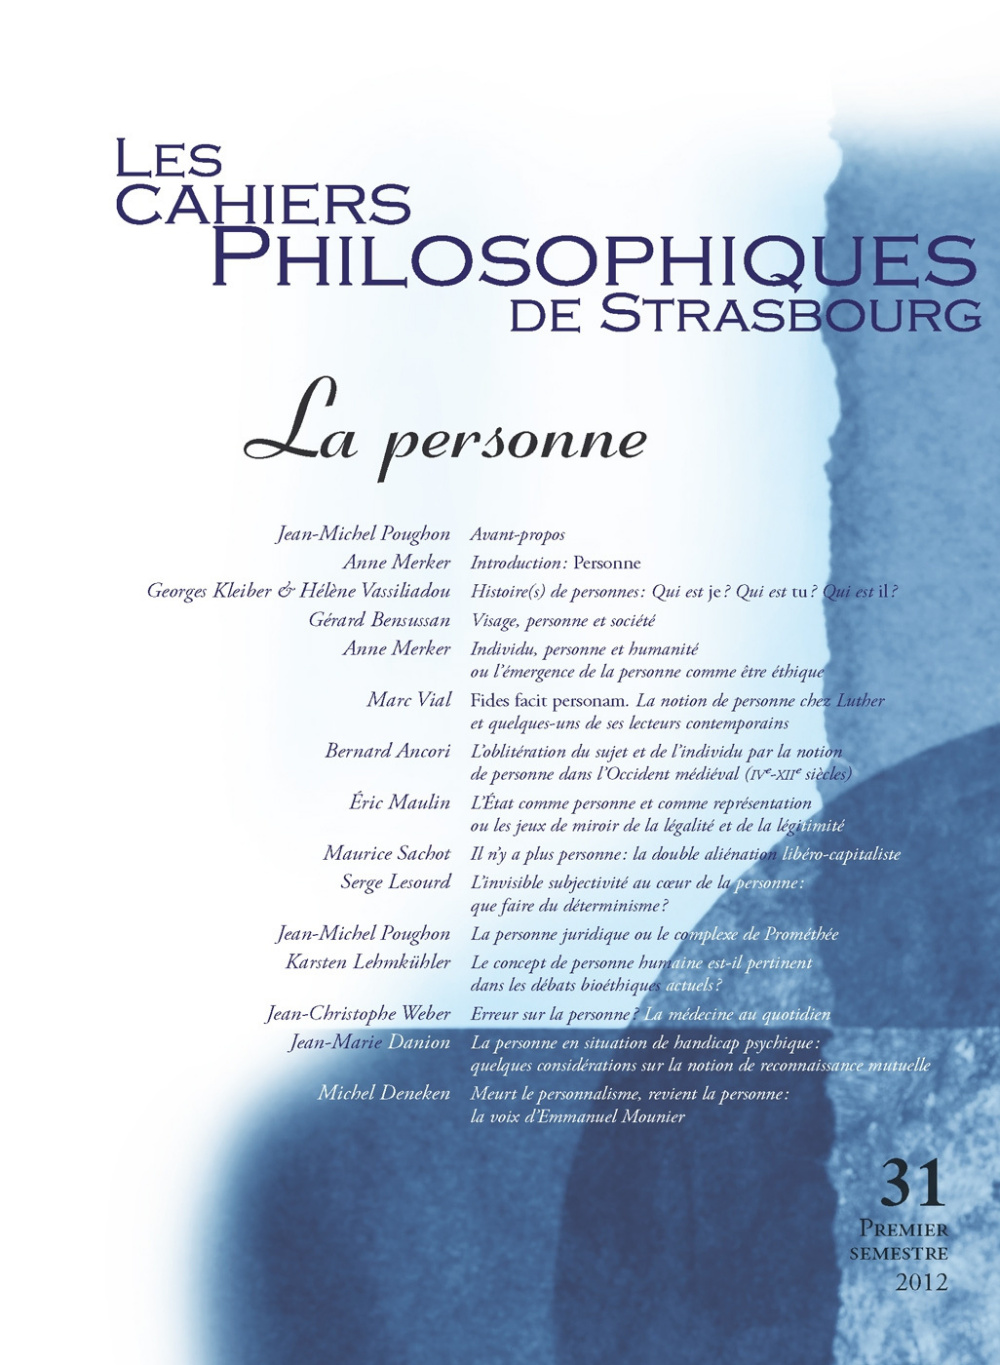 Les Cahiers philosophiques de Strasbourg n°31/2012